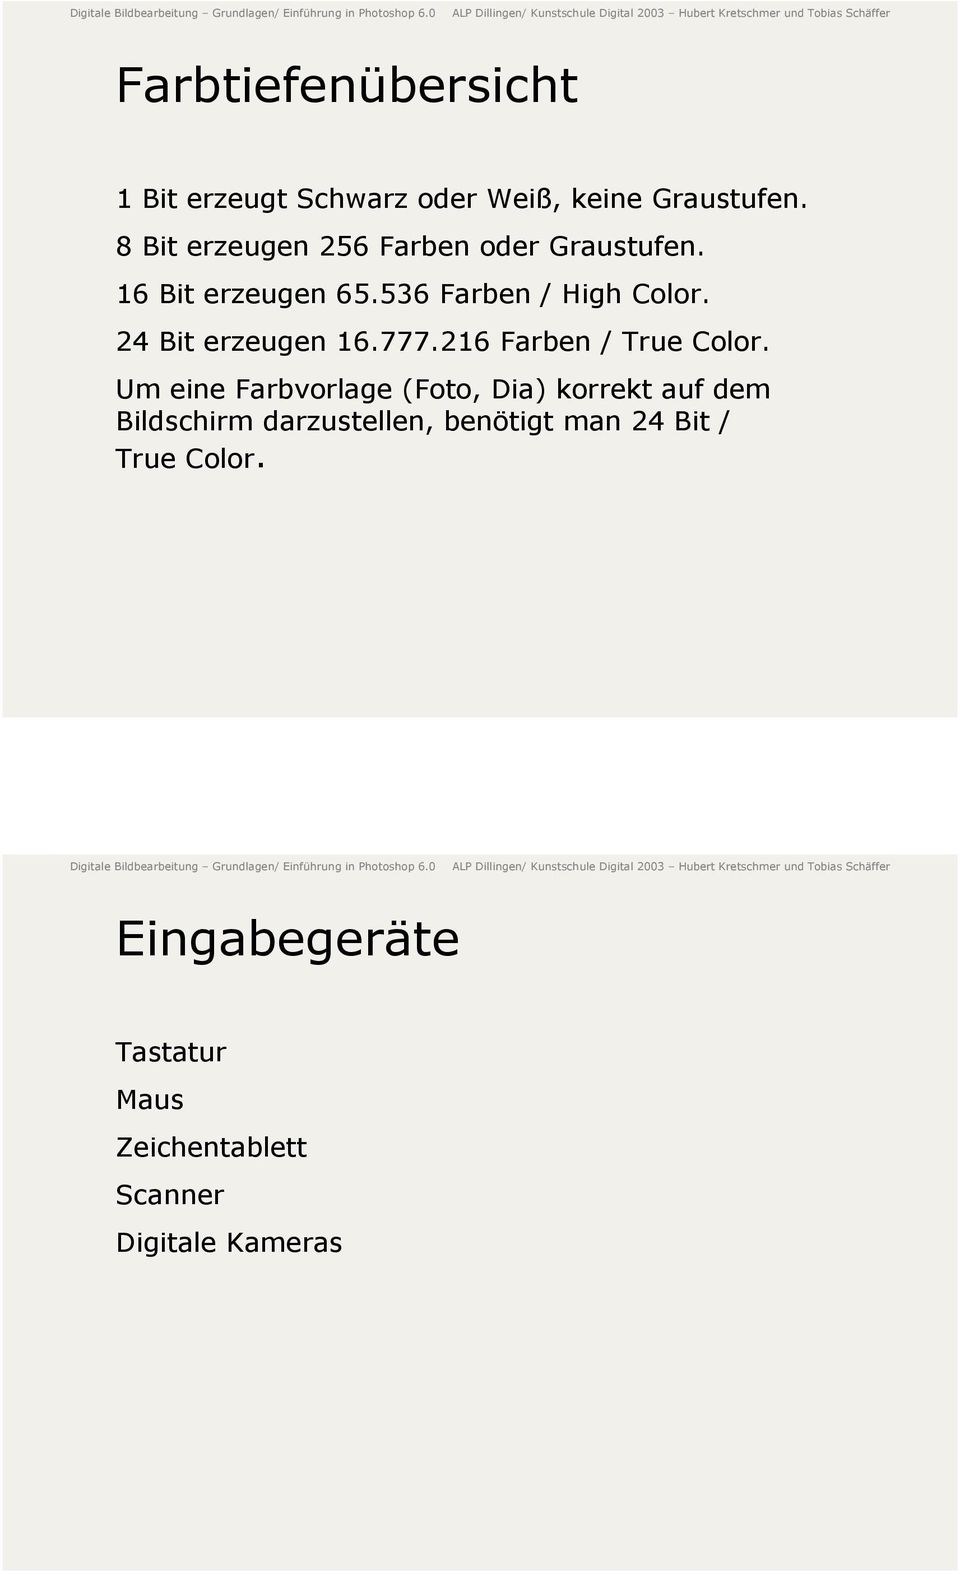 24 Bit erzeugen 16.777.216 Farben / True Color.